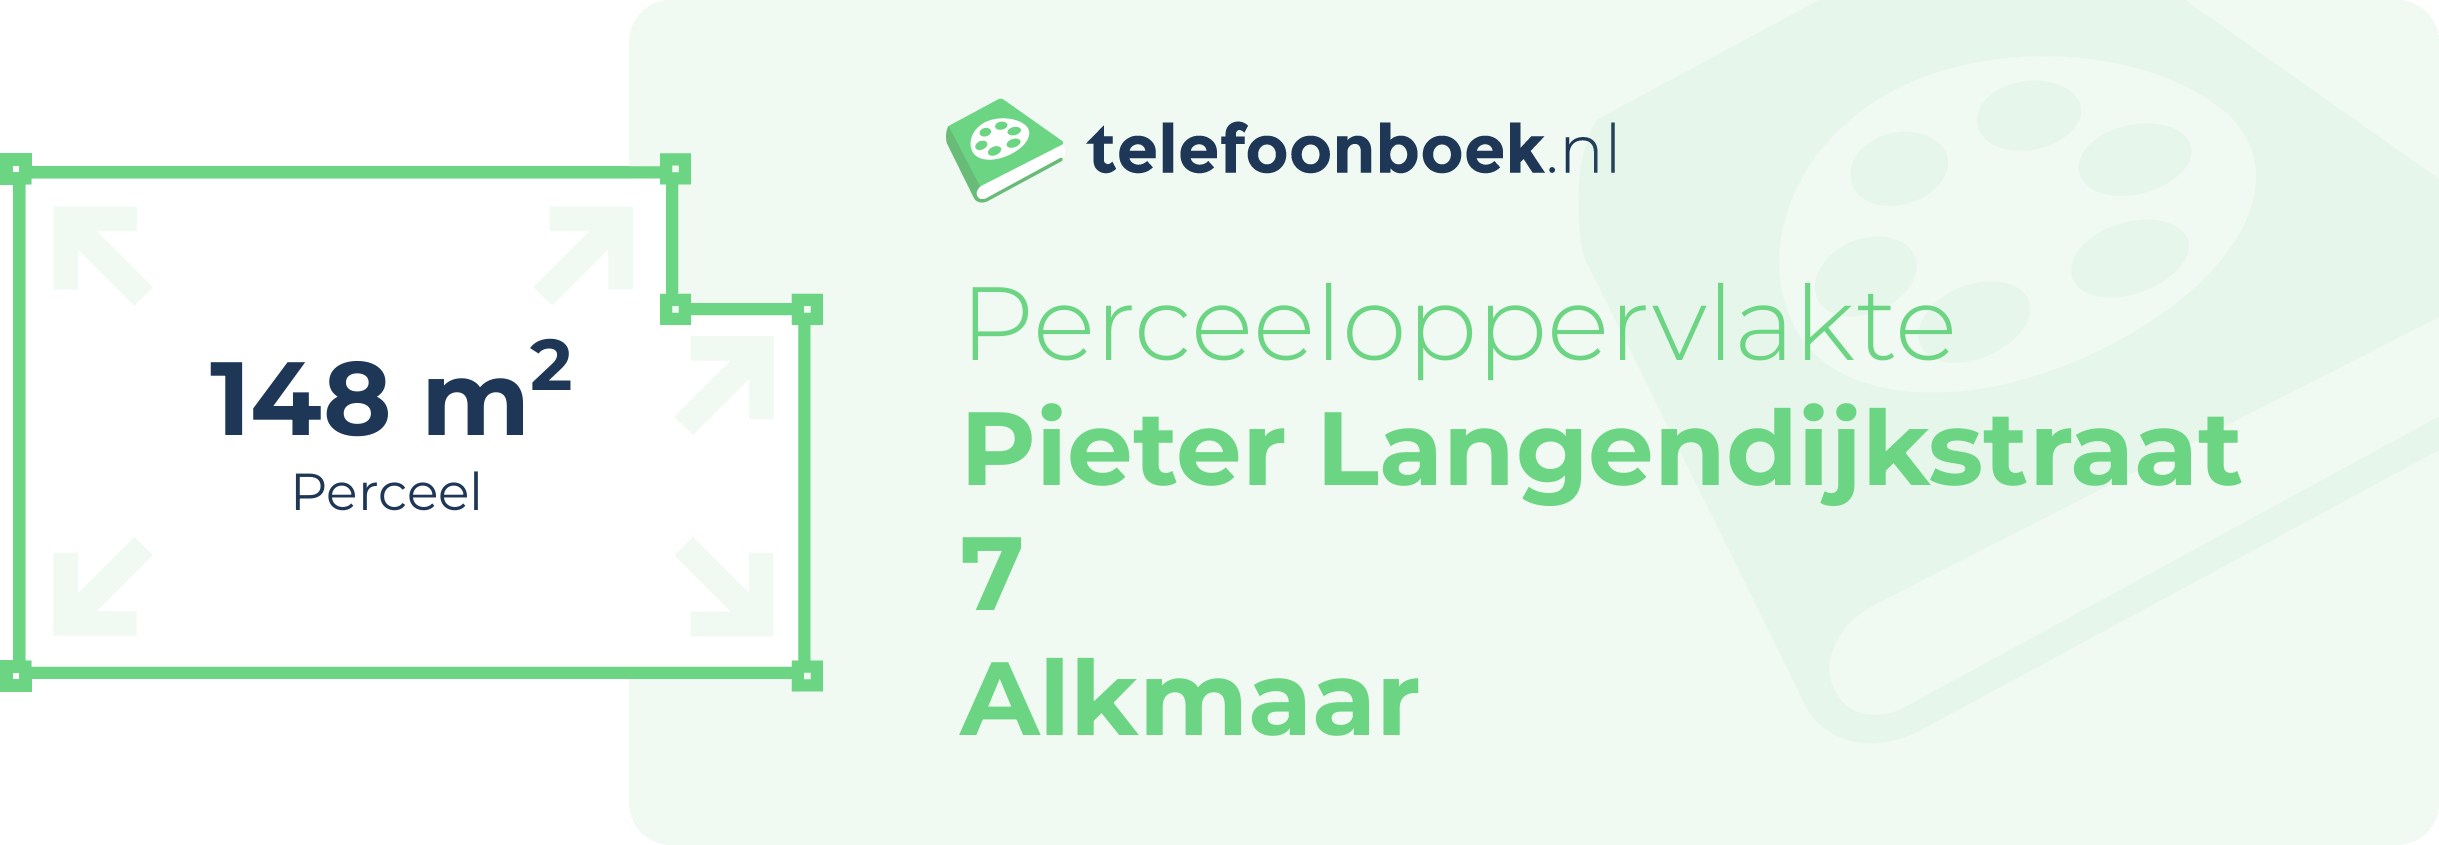 Perceeloppervlakte Pieter Langendijkstraat 7 Alkmaar